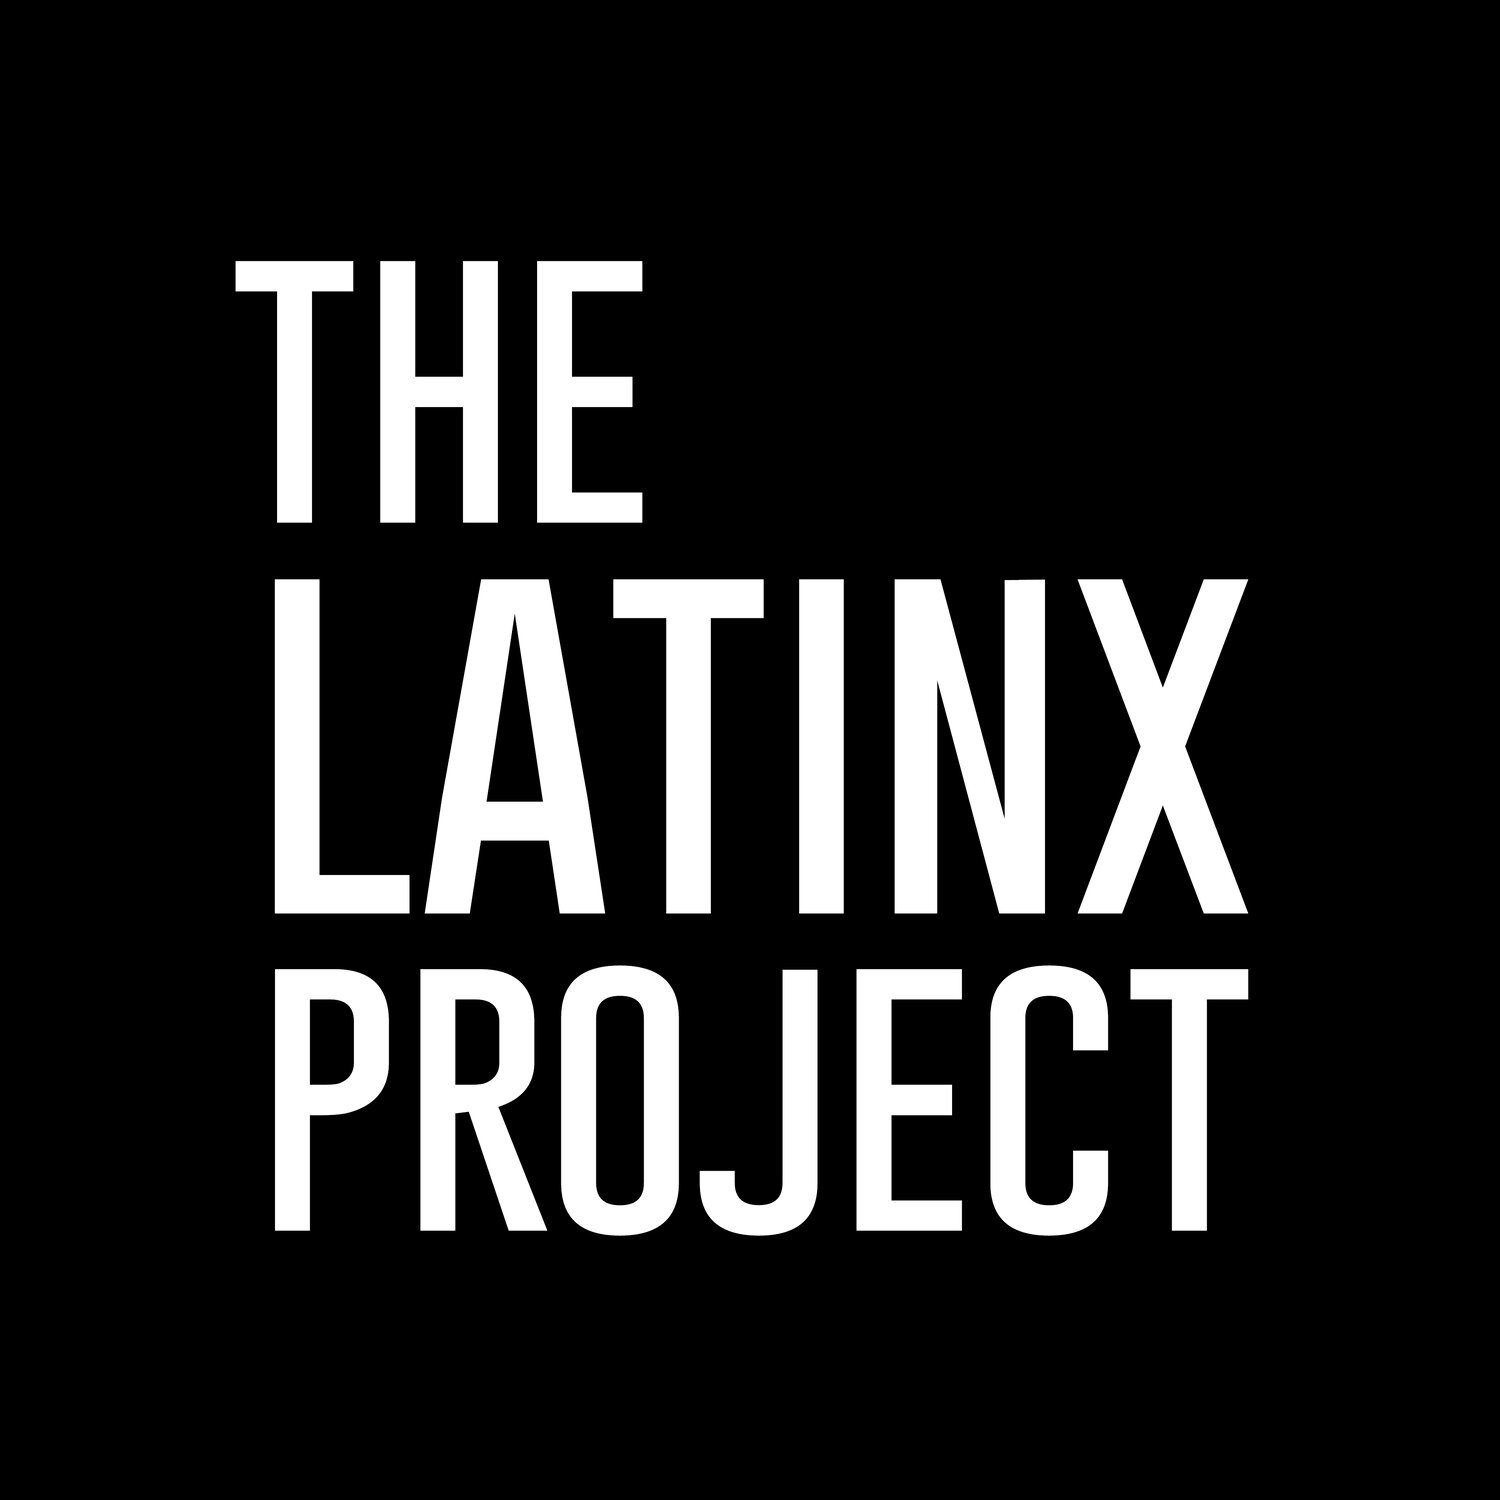 Latinx Project at NYU logo.